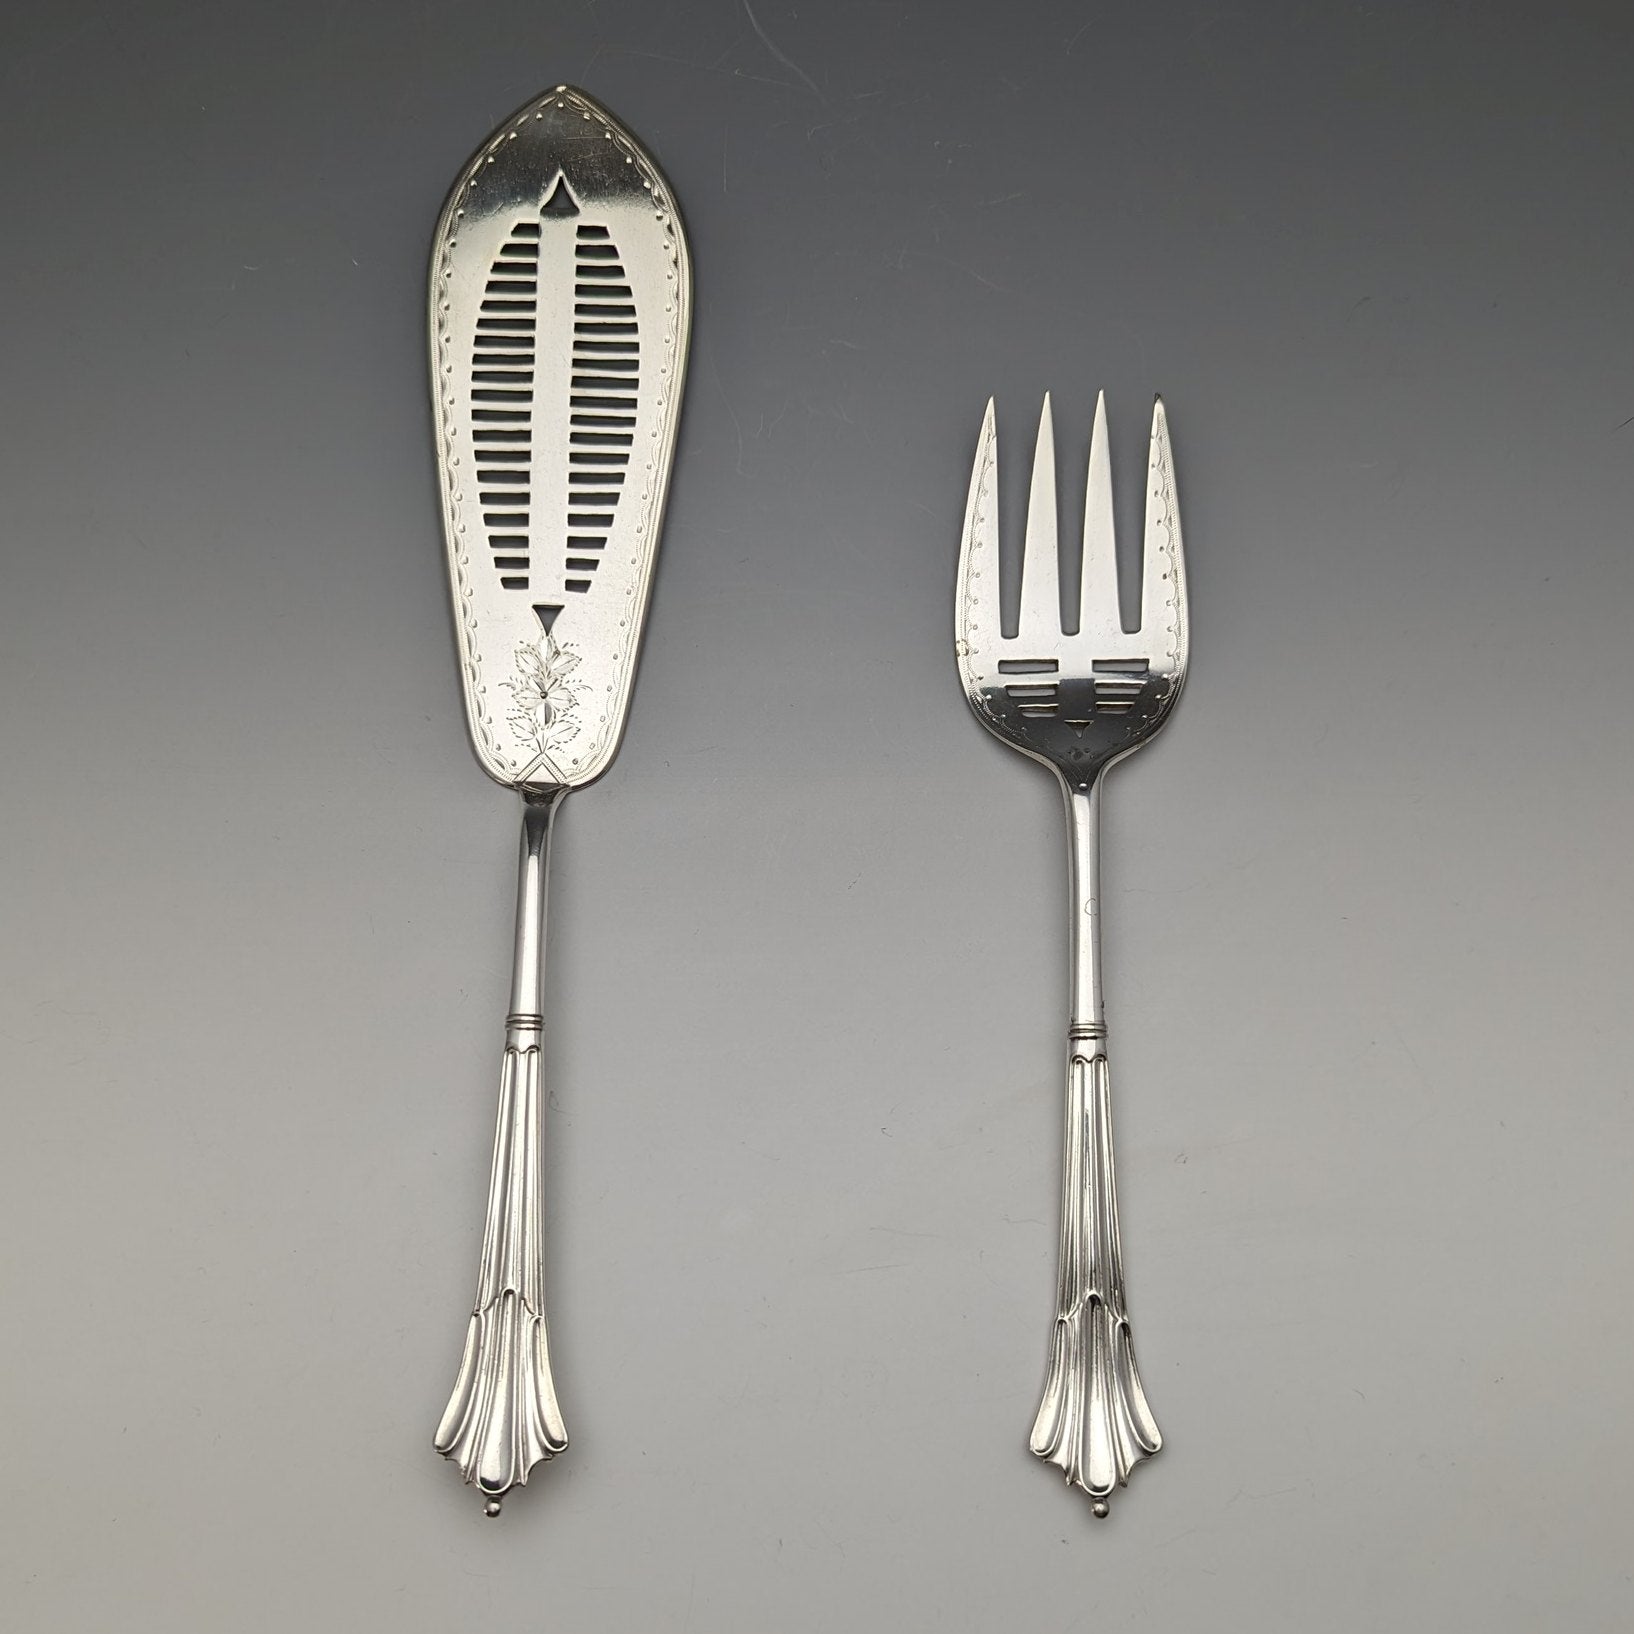 Other cutlery – アンティークショップSILVER-LUG